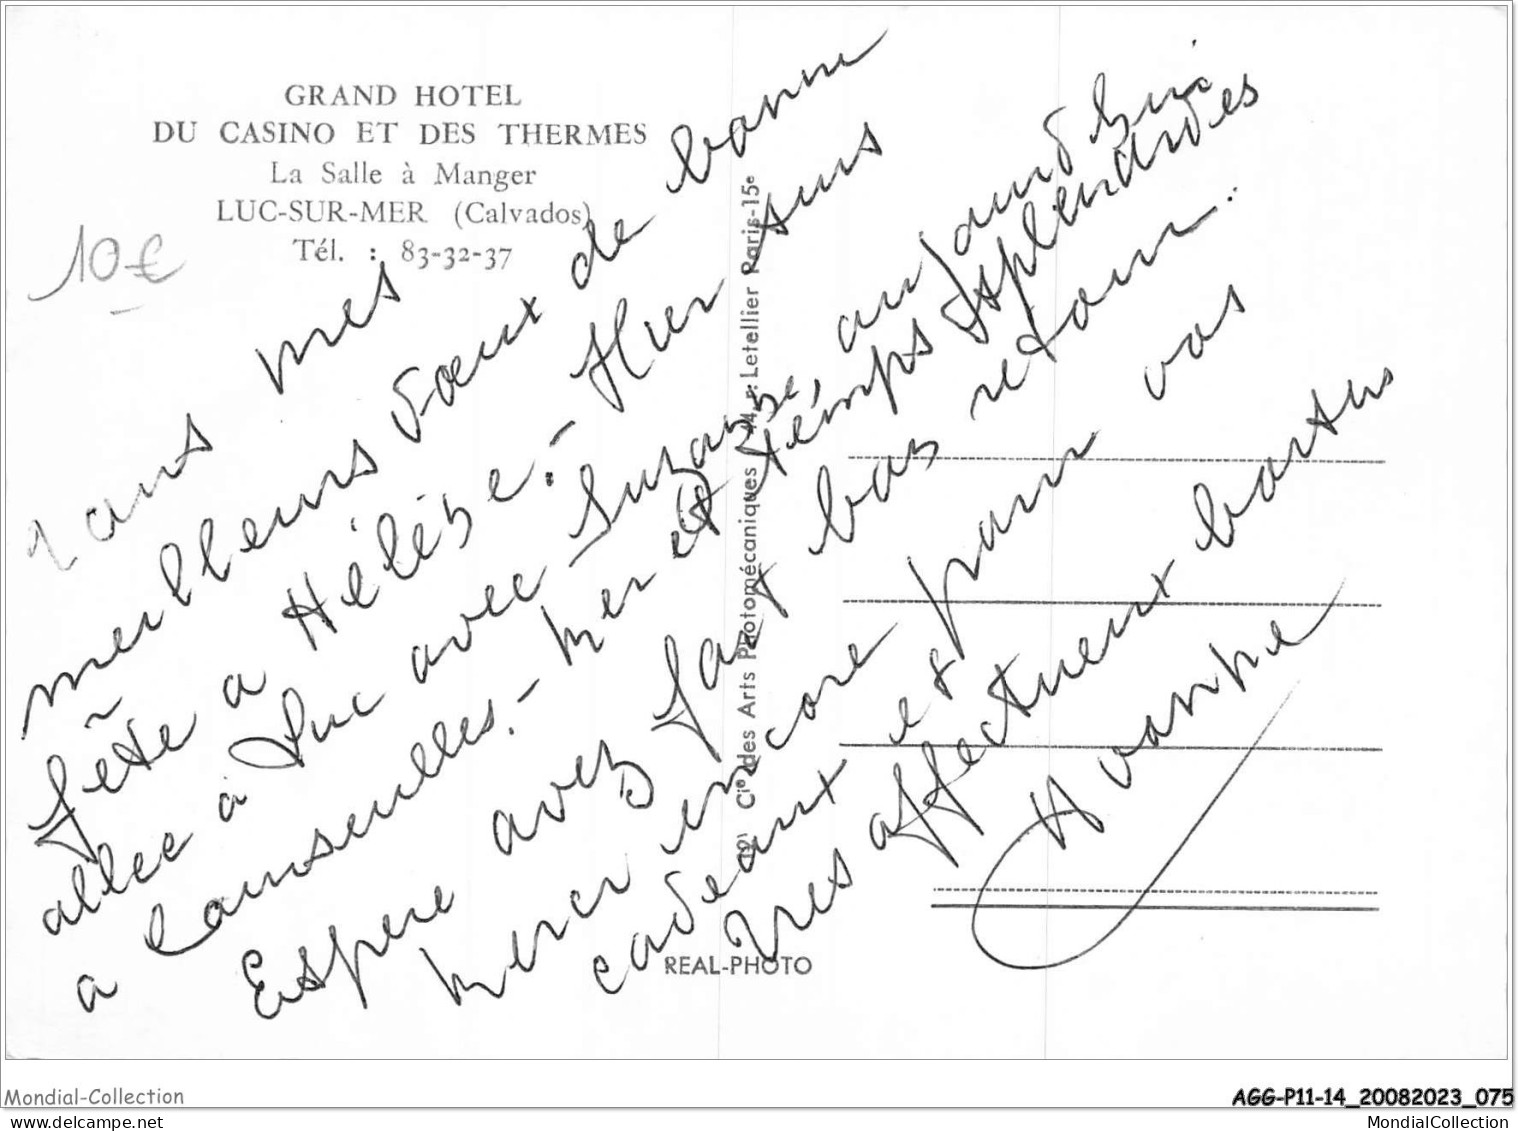 AGGP11-14-0877 - LUC-SUR-MER - Grand Hotel Du Casino Et Des Thermes - La Salle A Manger - Luc Sur Mer